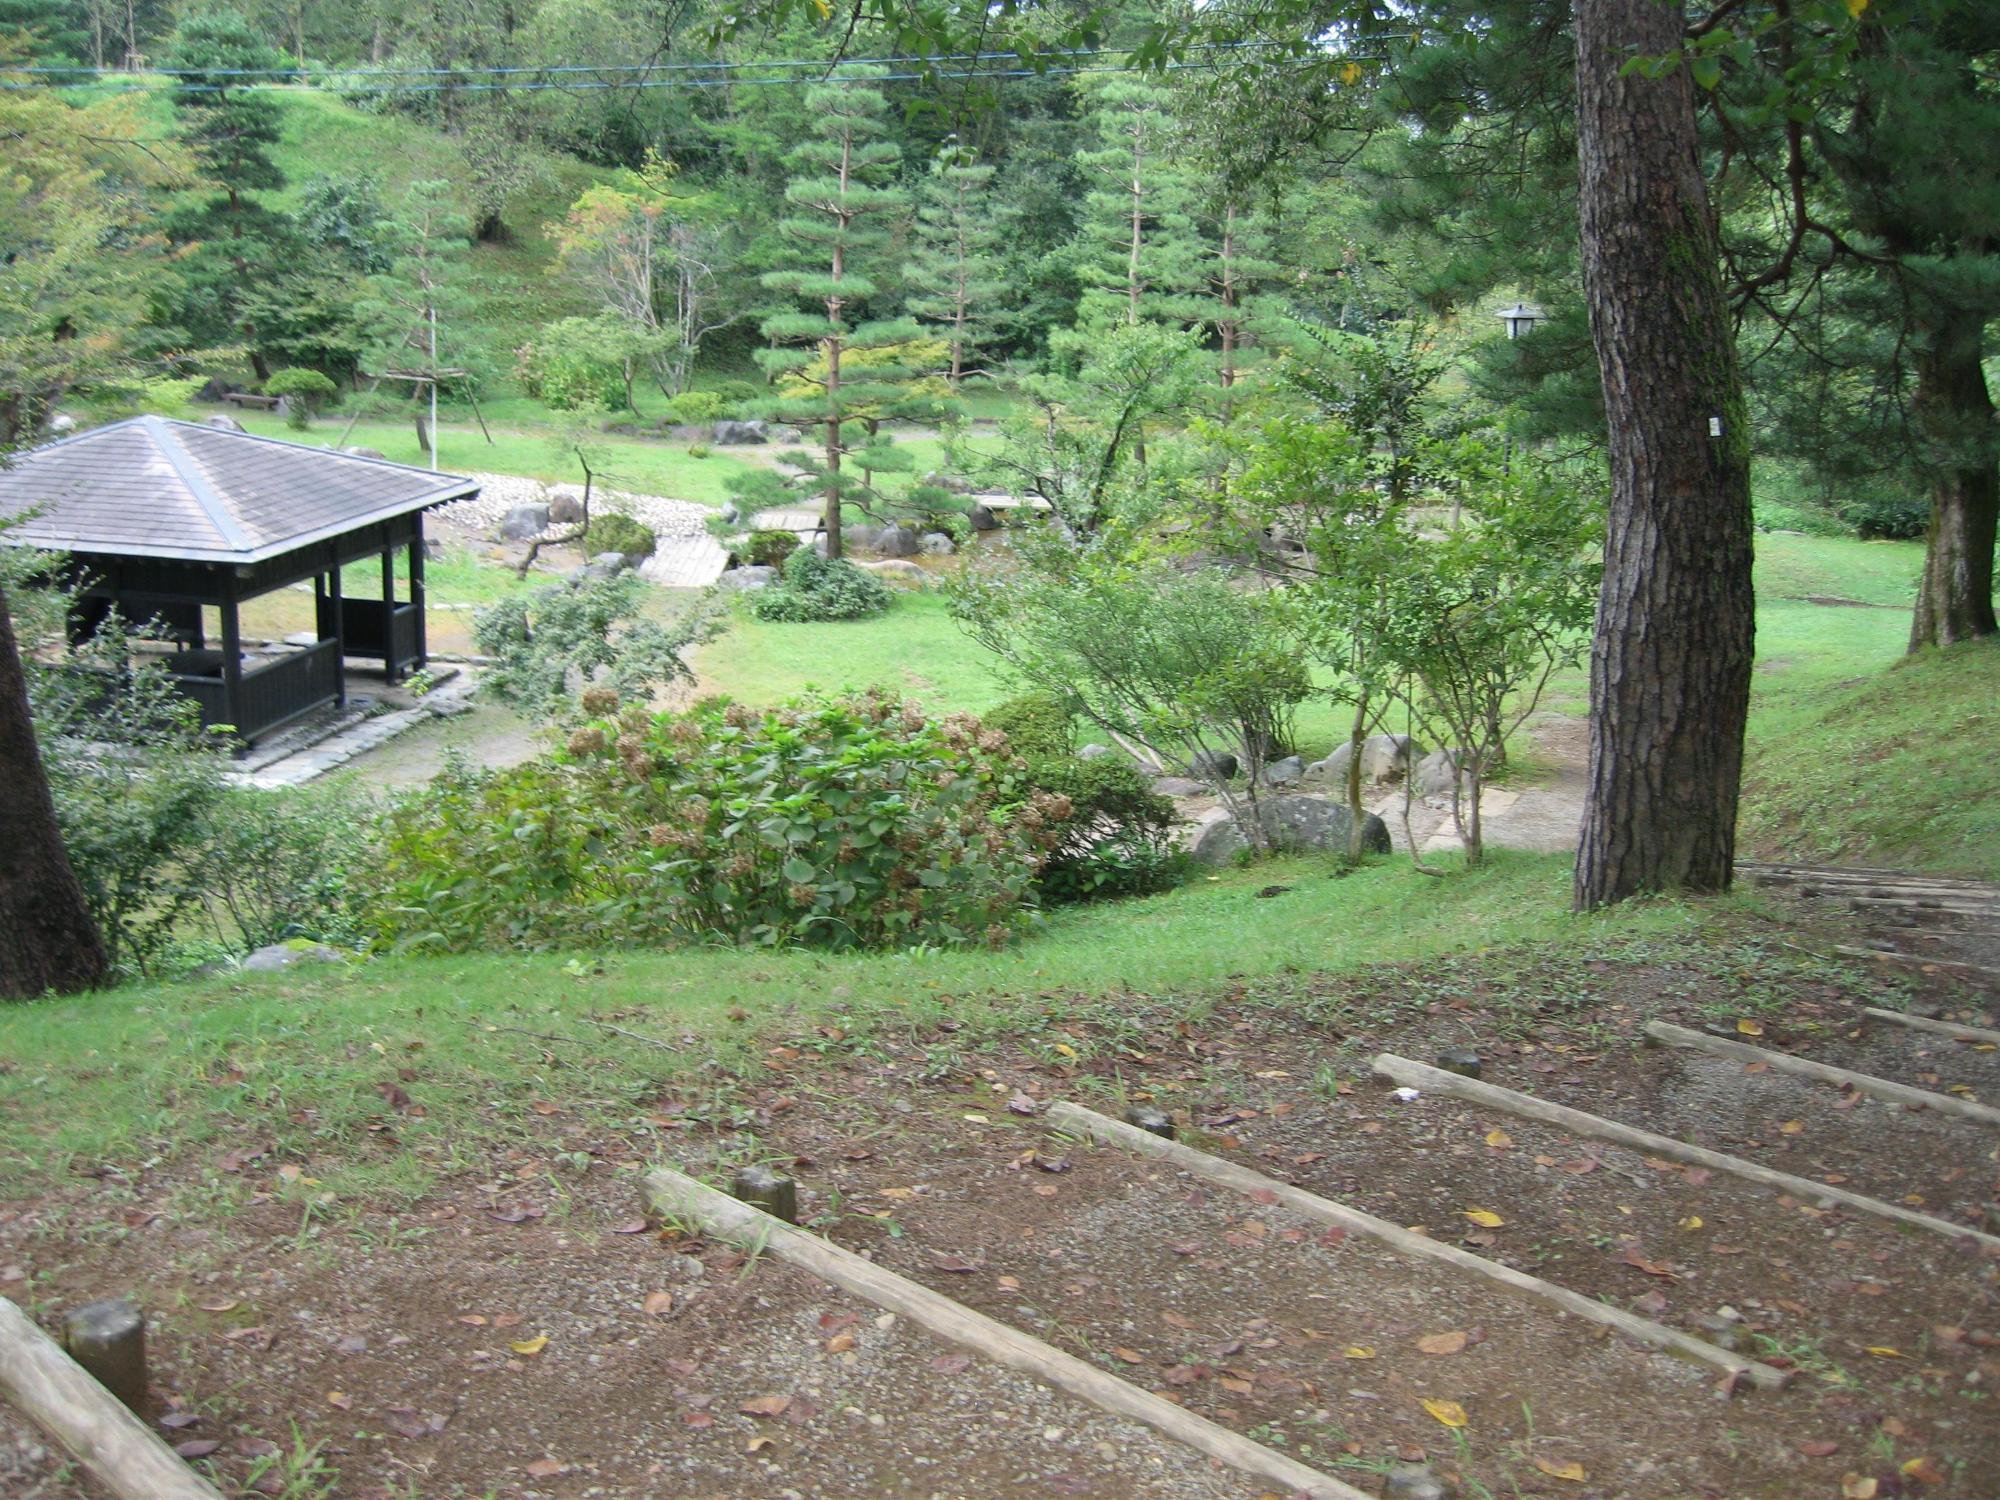 悠久山公園内の日本庭園の様子の写真